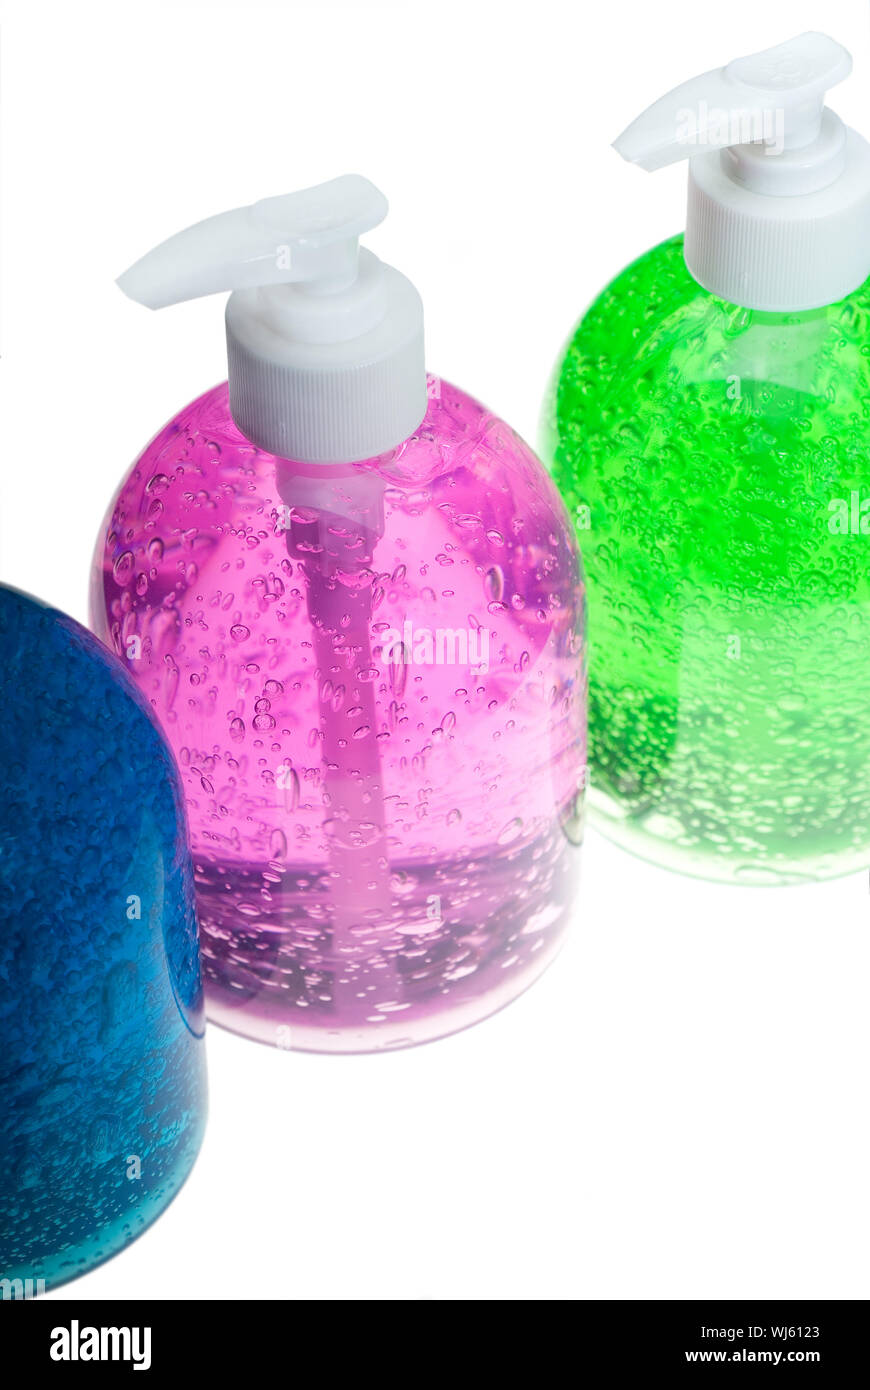 farbenfrohe blau, rosa und grünen Haar gel Flaschen auf weißem Hintergrund Stockfoto